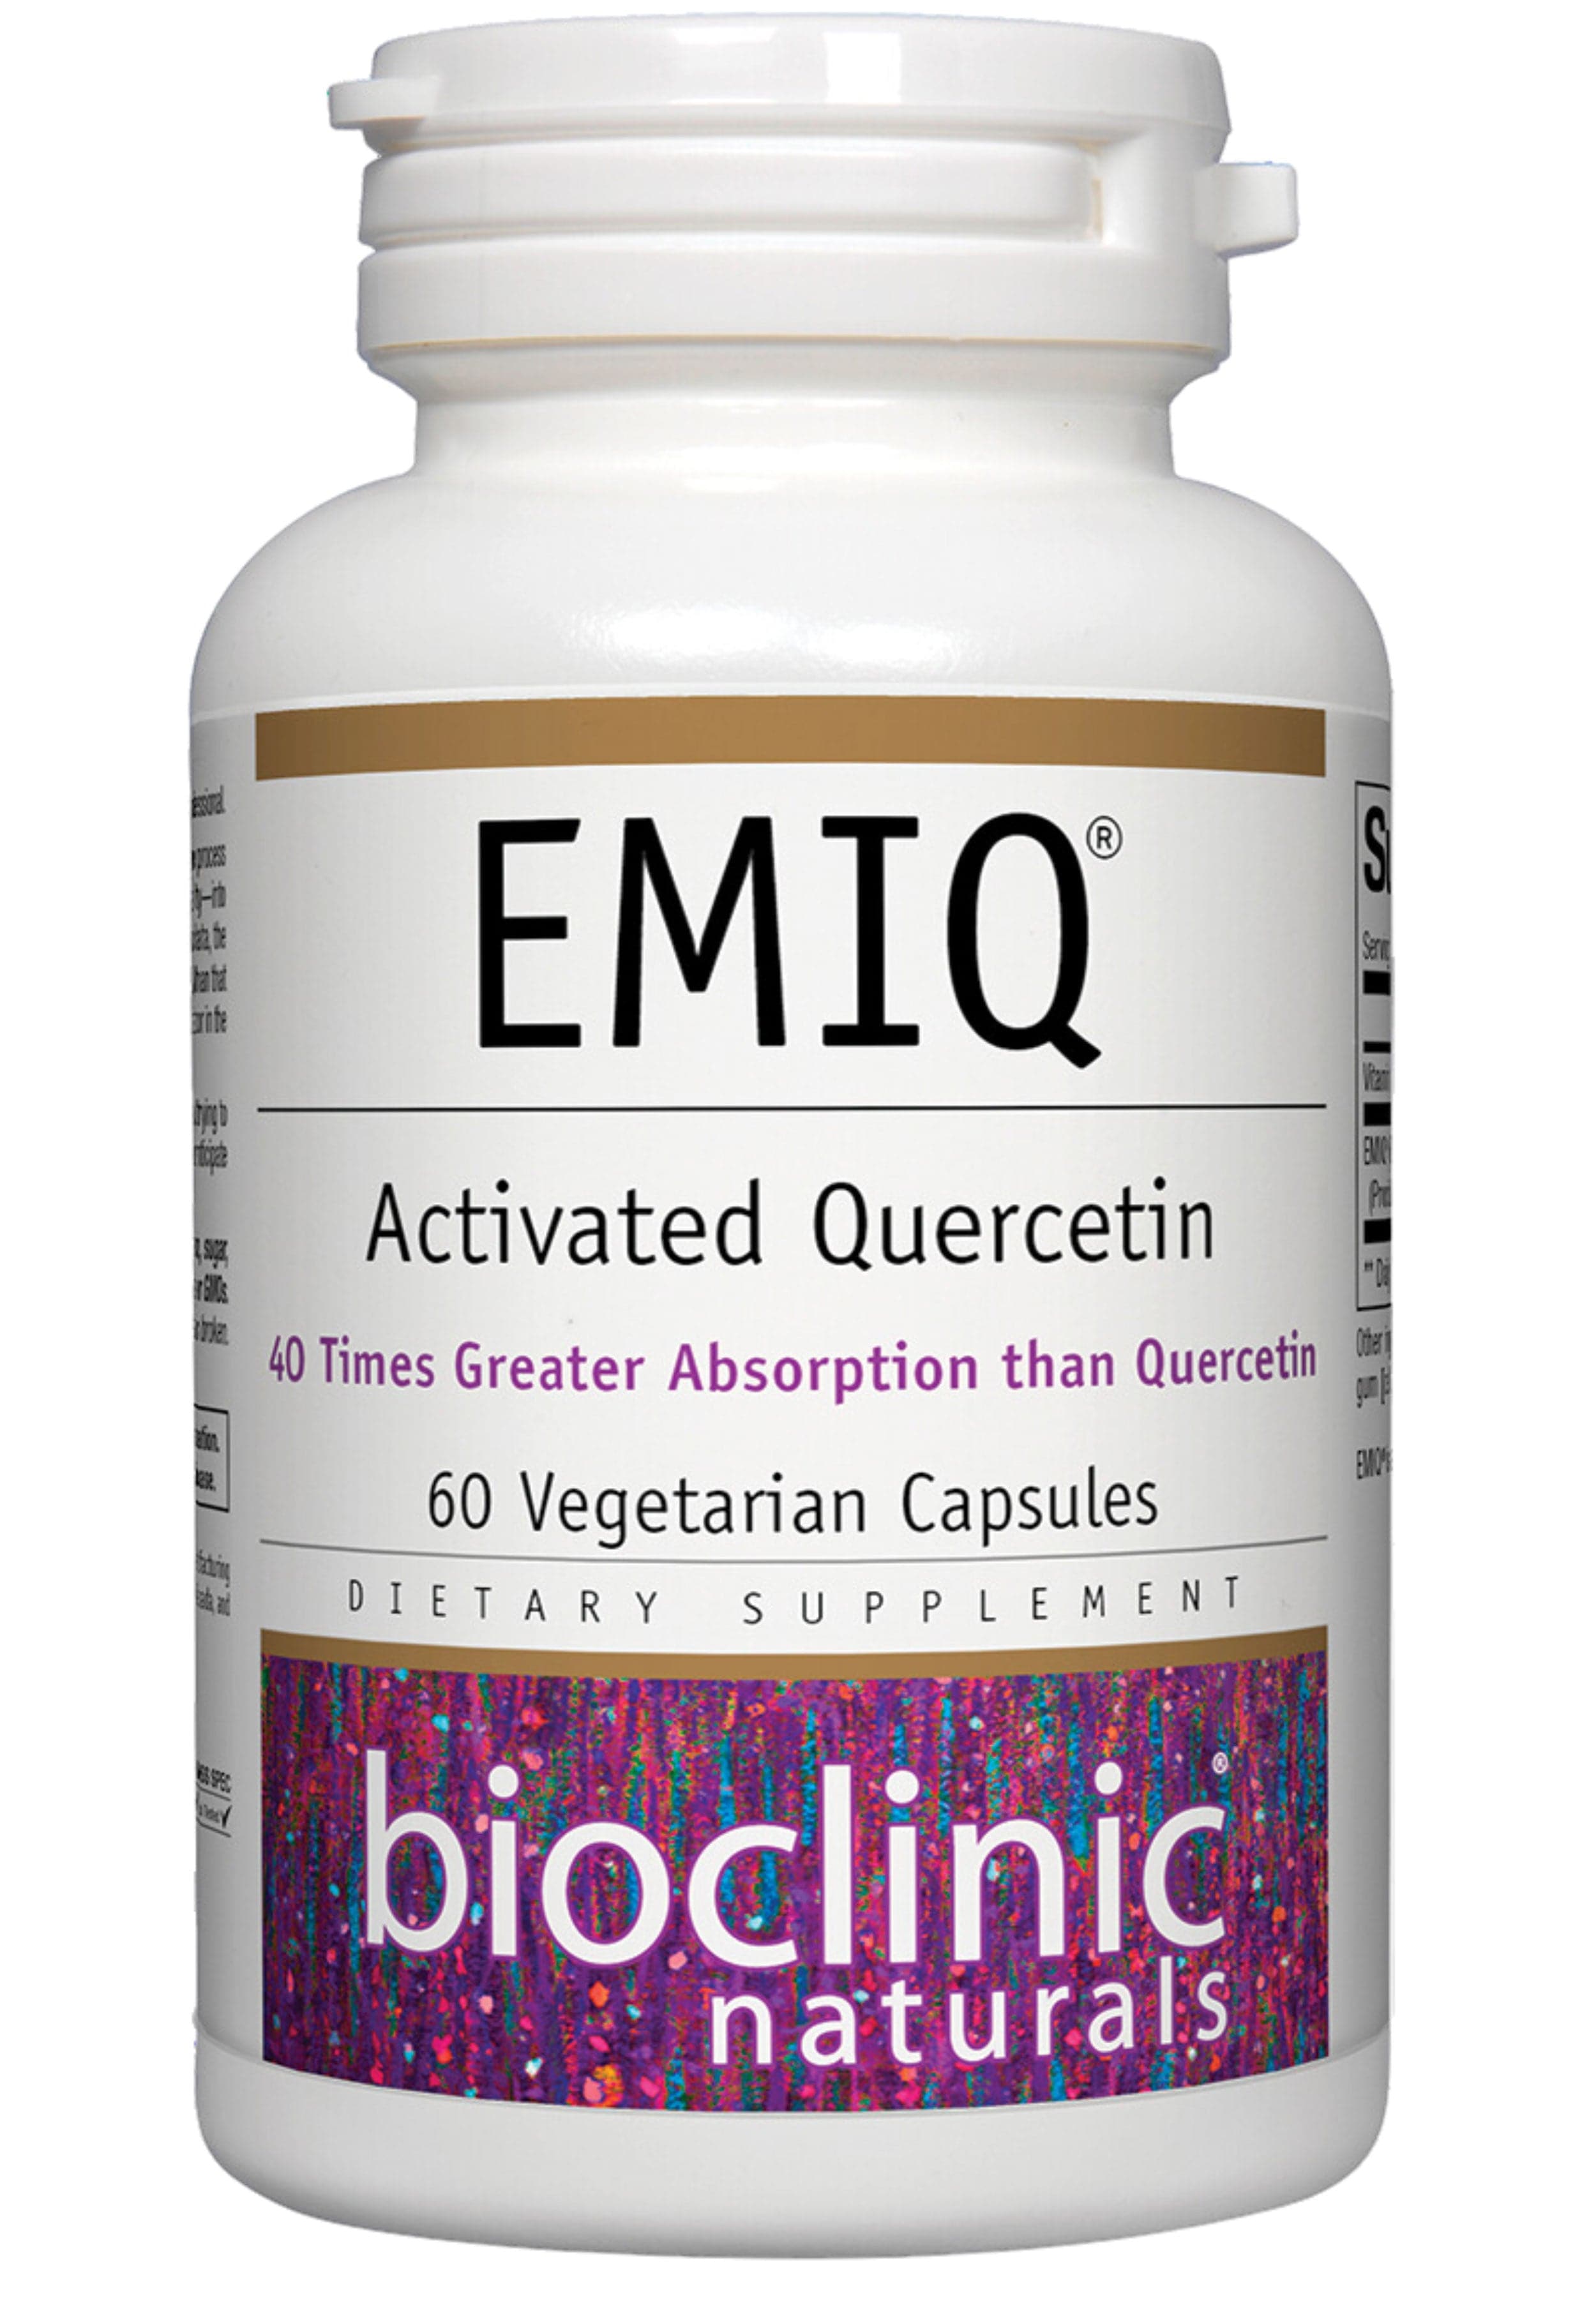 Bioclinic Naturals EMIQ